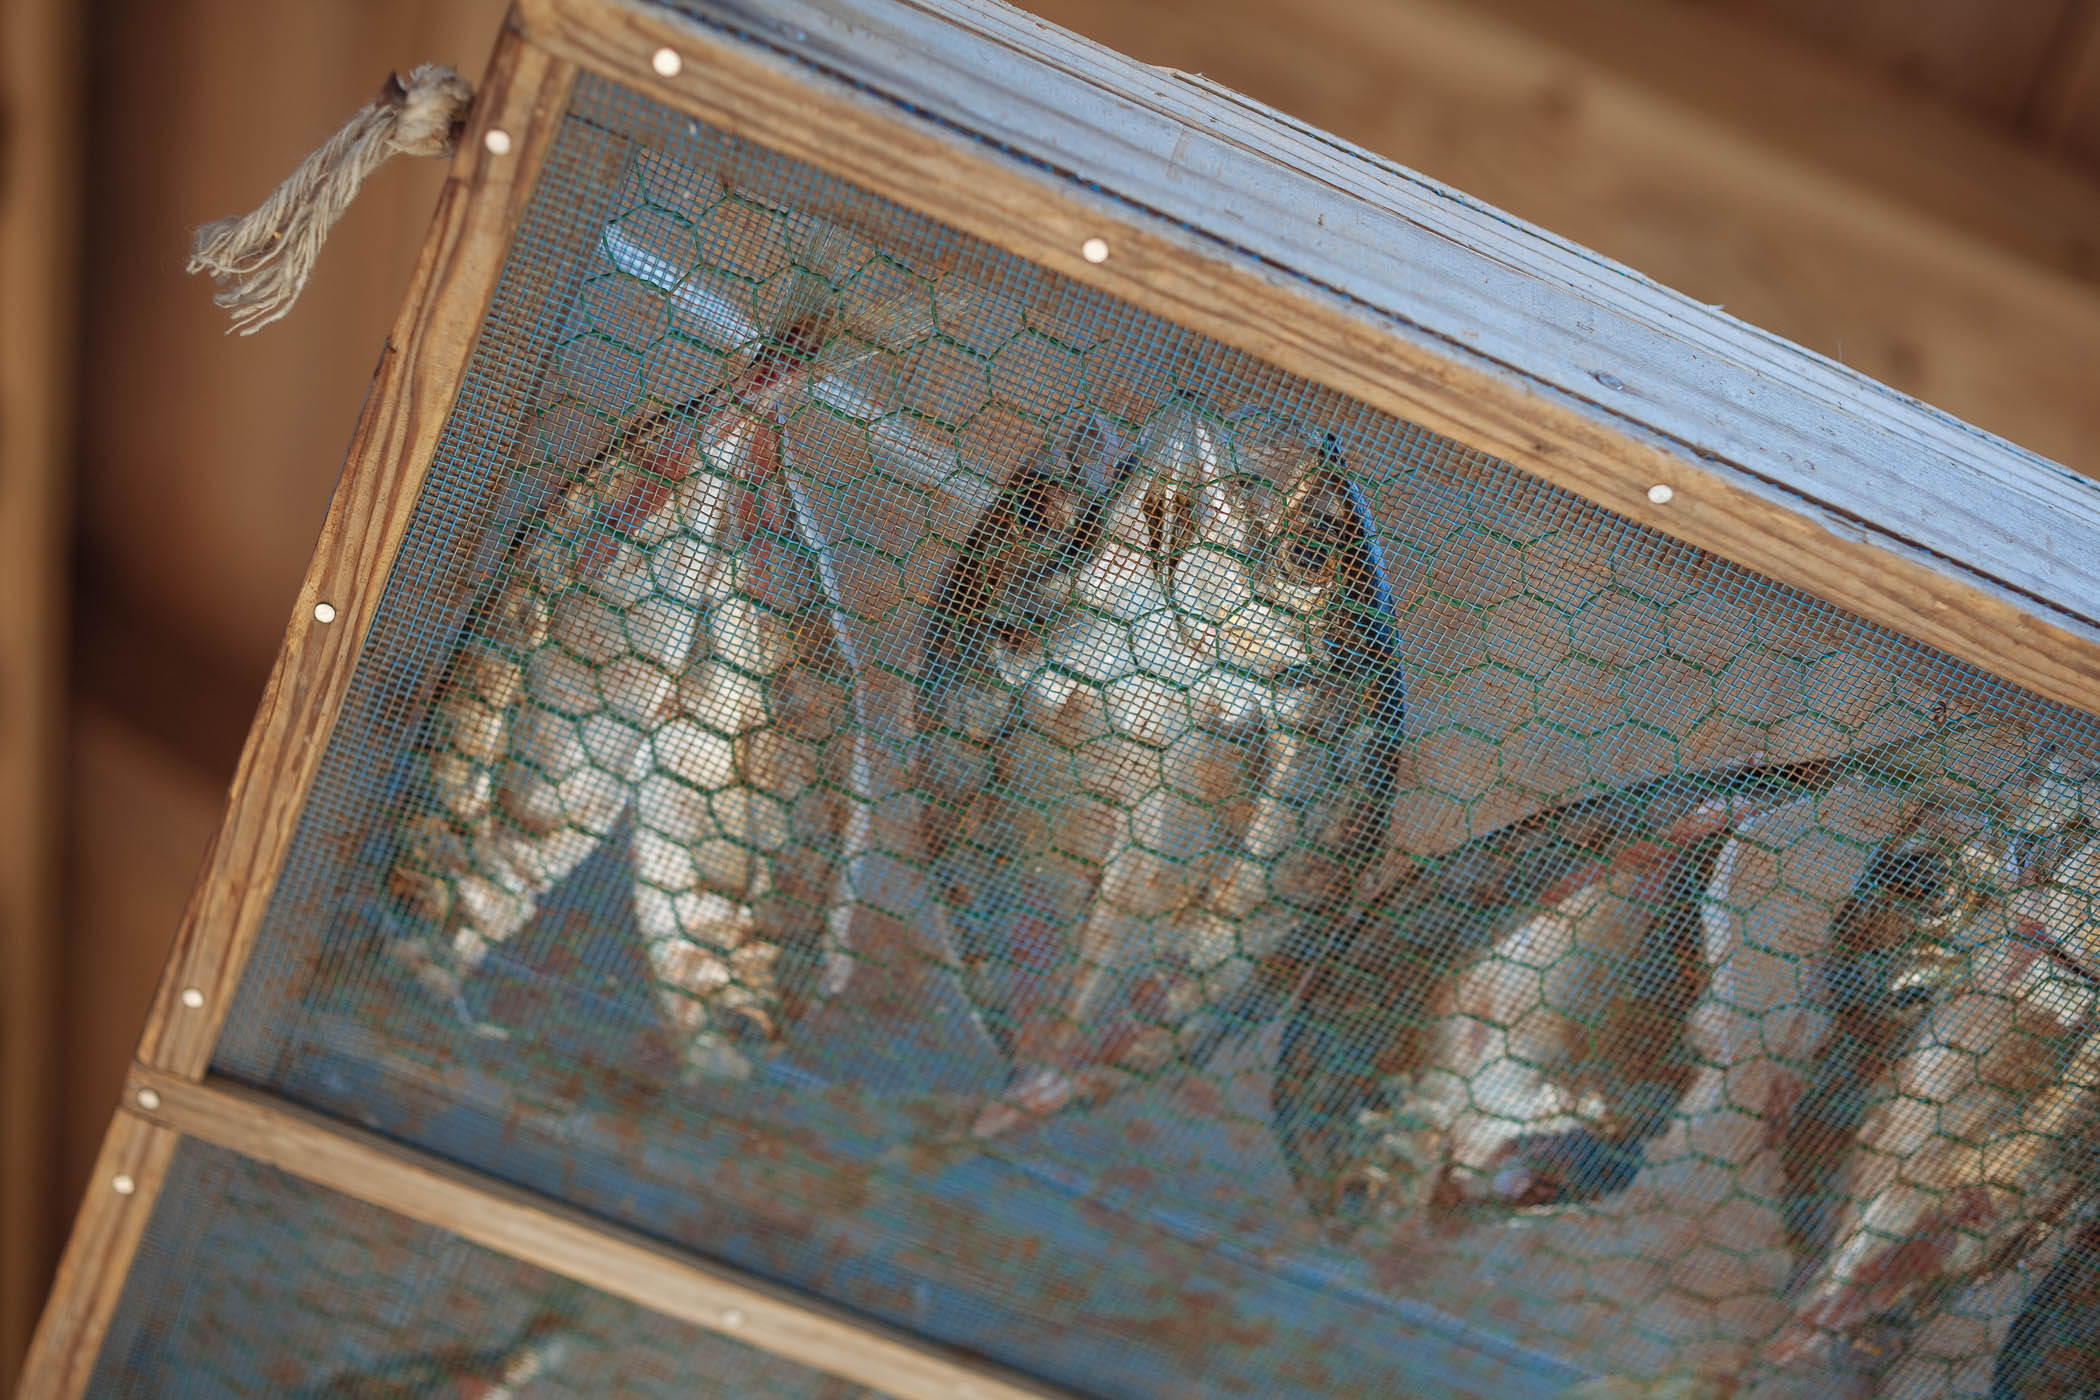 Himono air dried horse mackerel